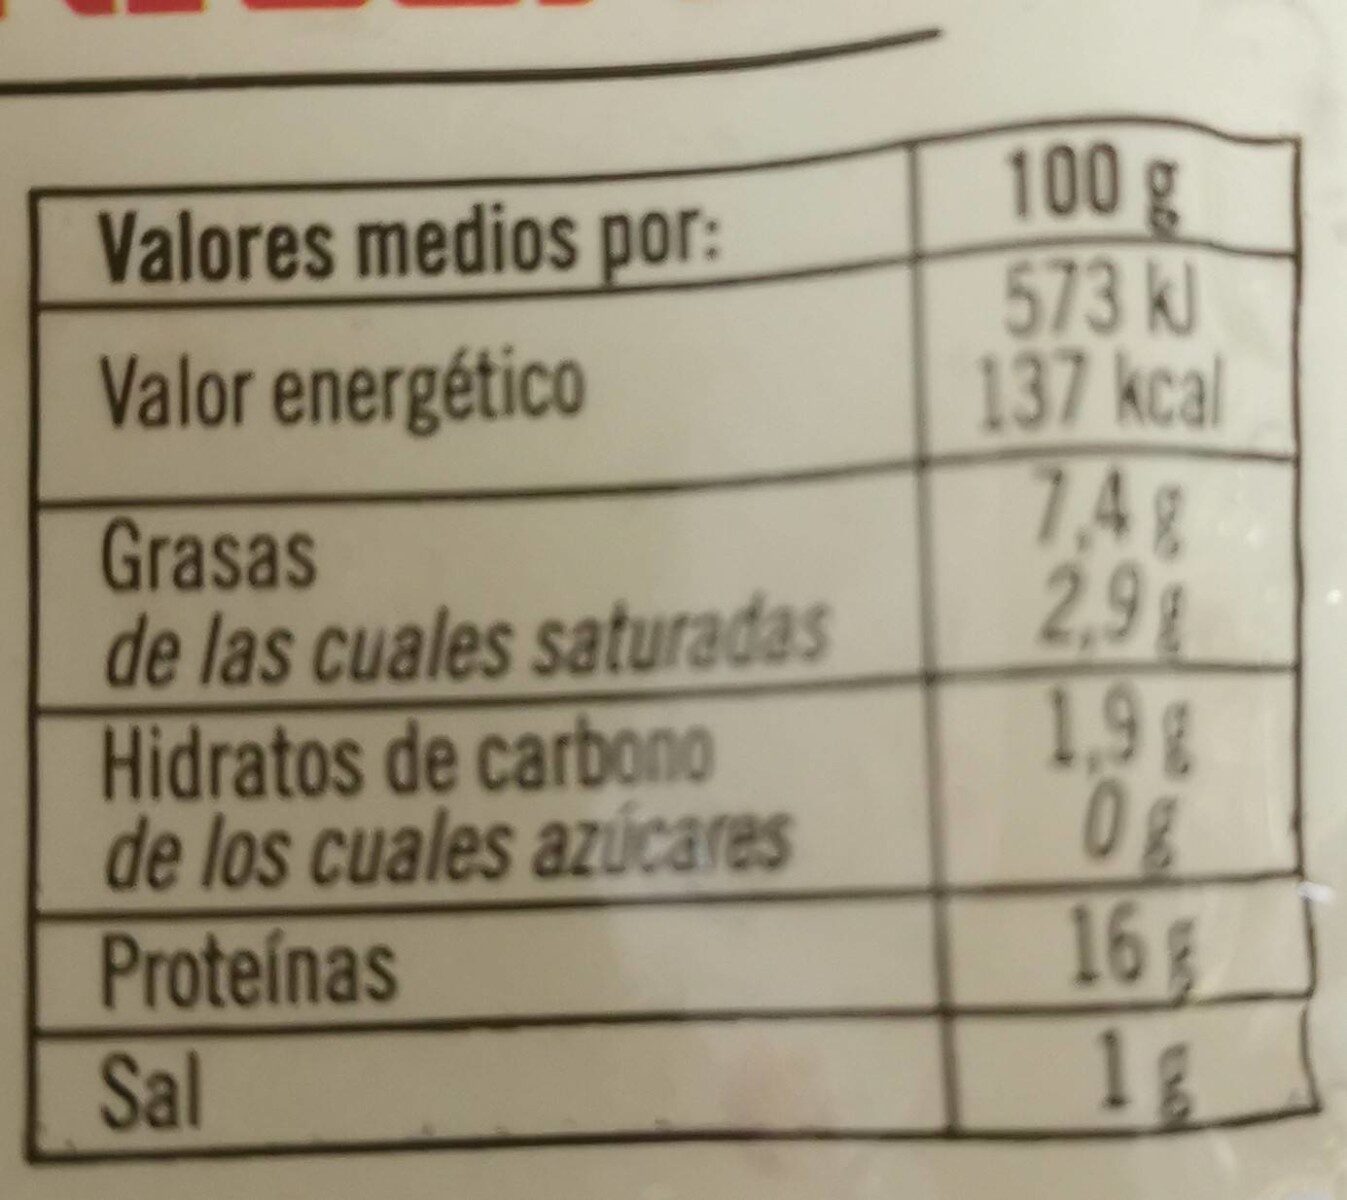 Callos a la madrileña - Nutrition facts - es